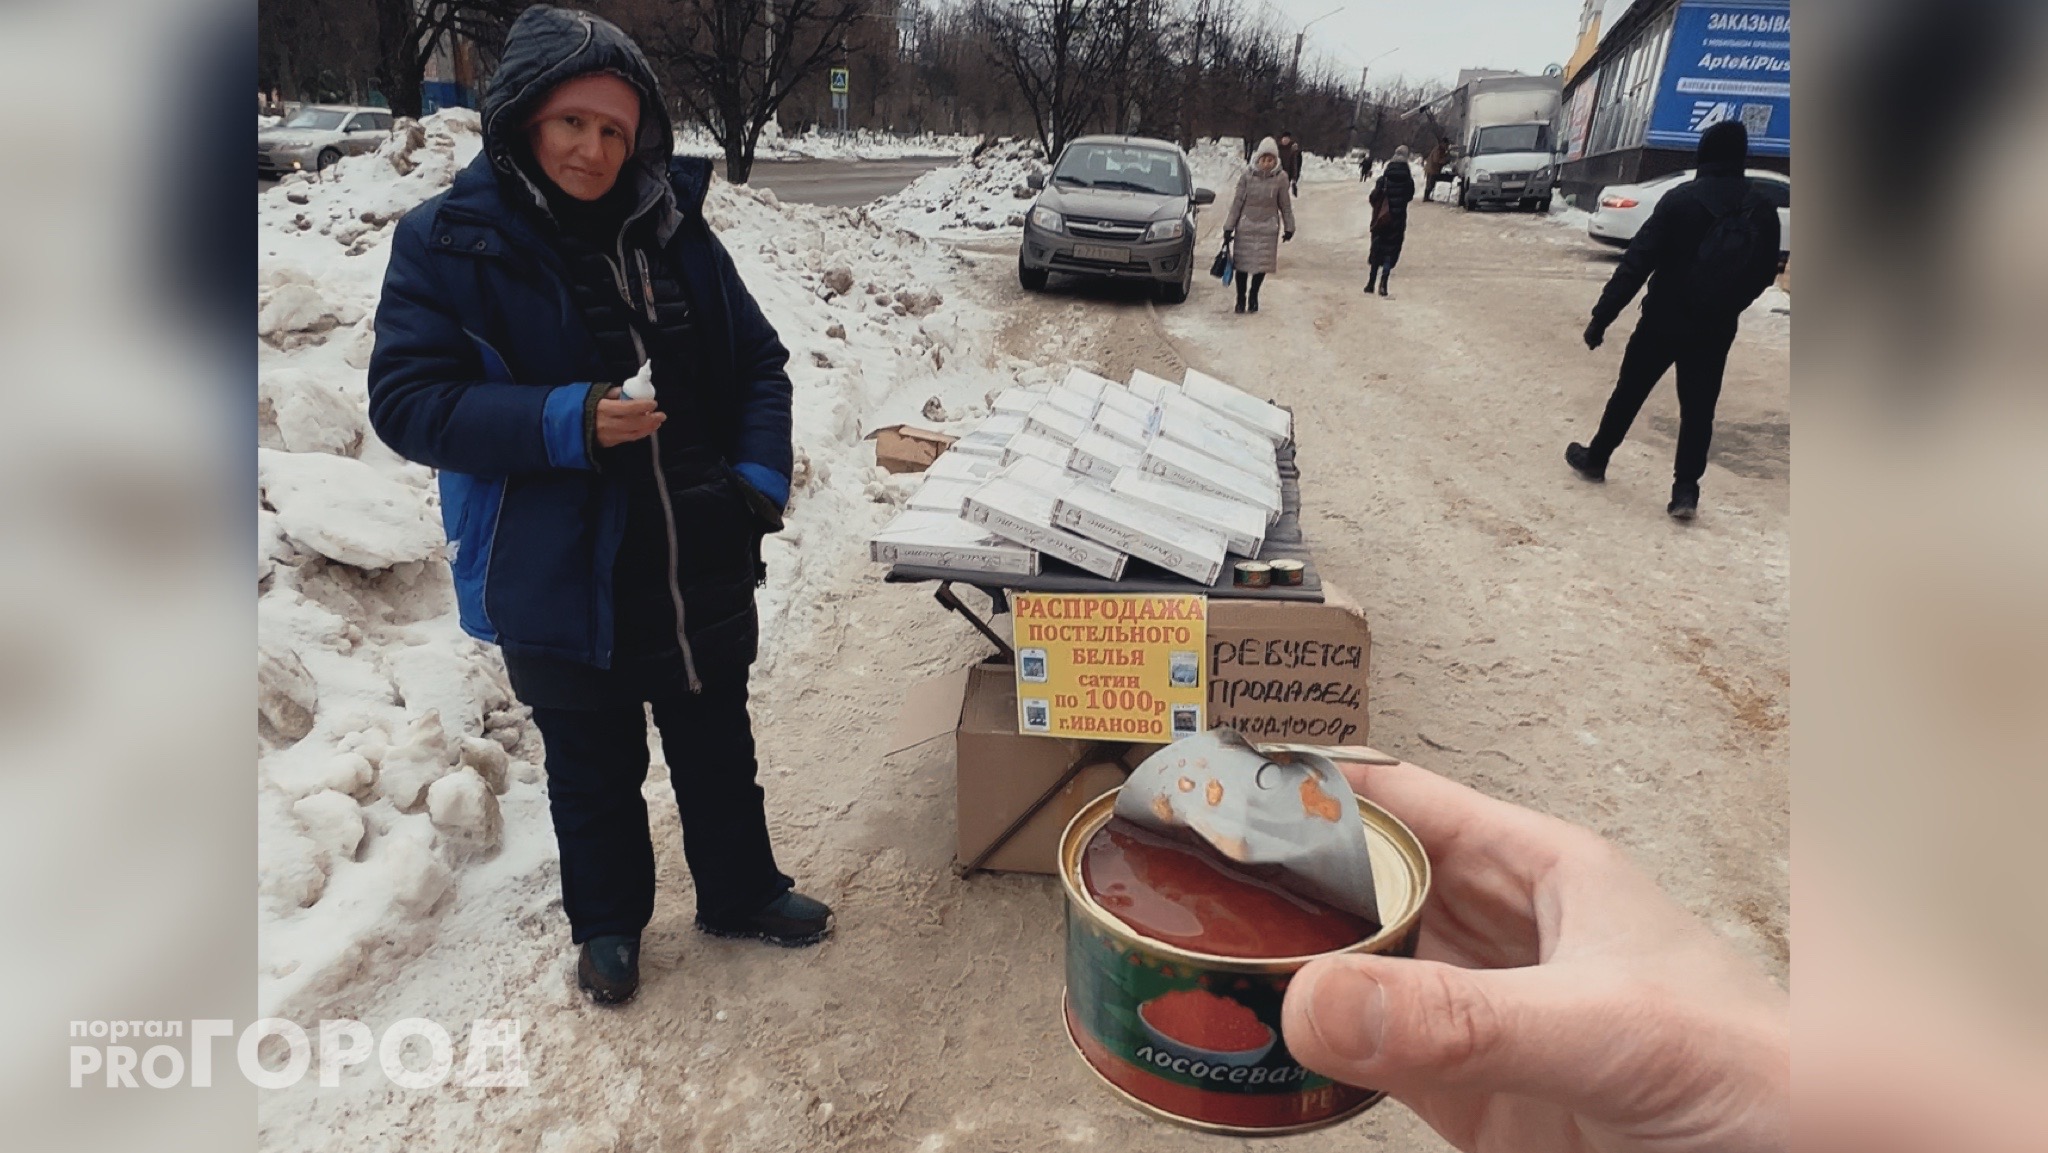 Камчатскую икру за 100 рублей продают на улицах Новочебоксарска: проверка с продавщицей